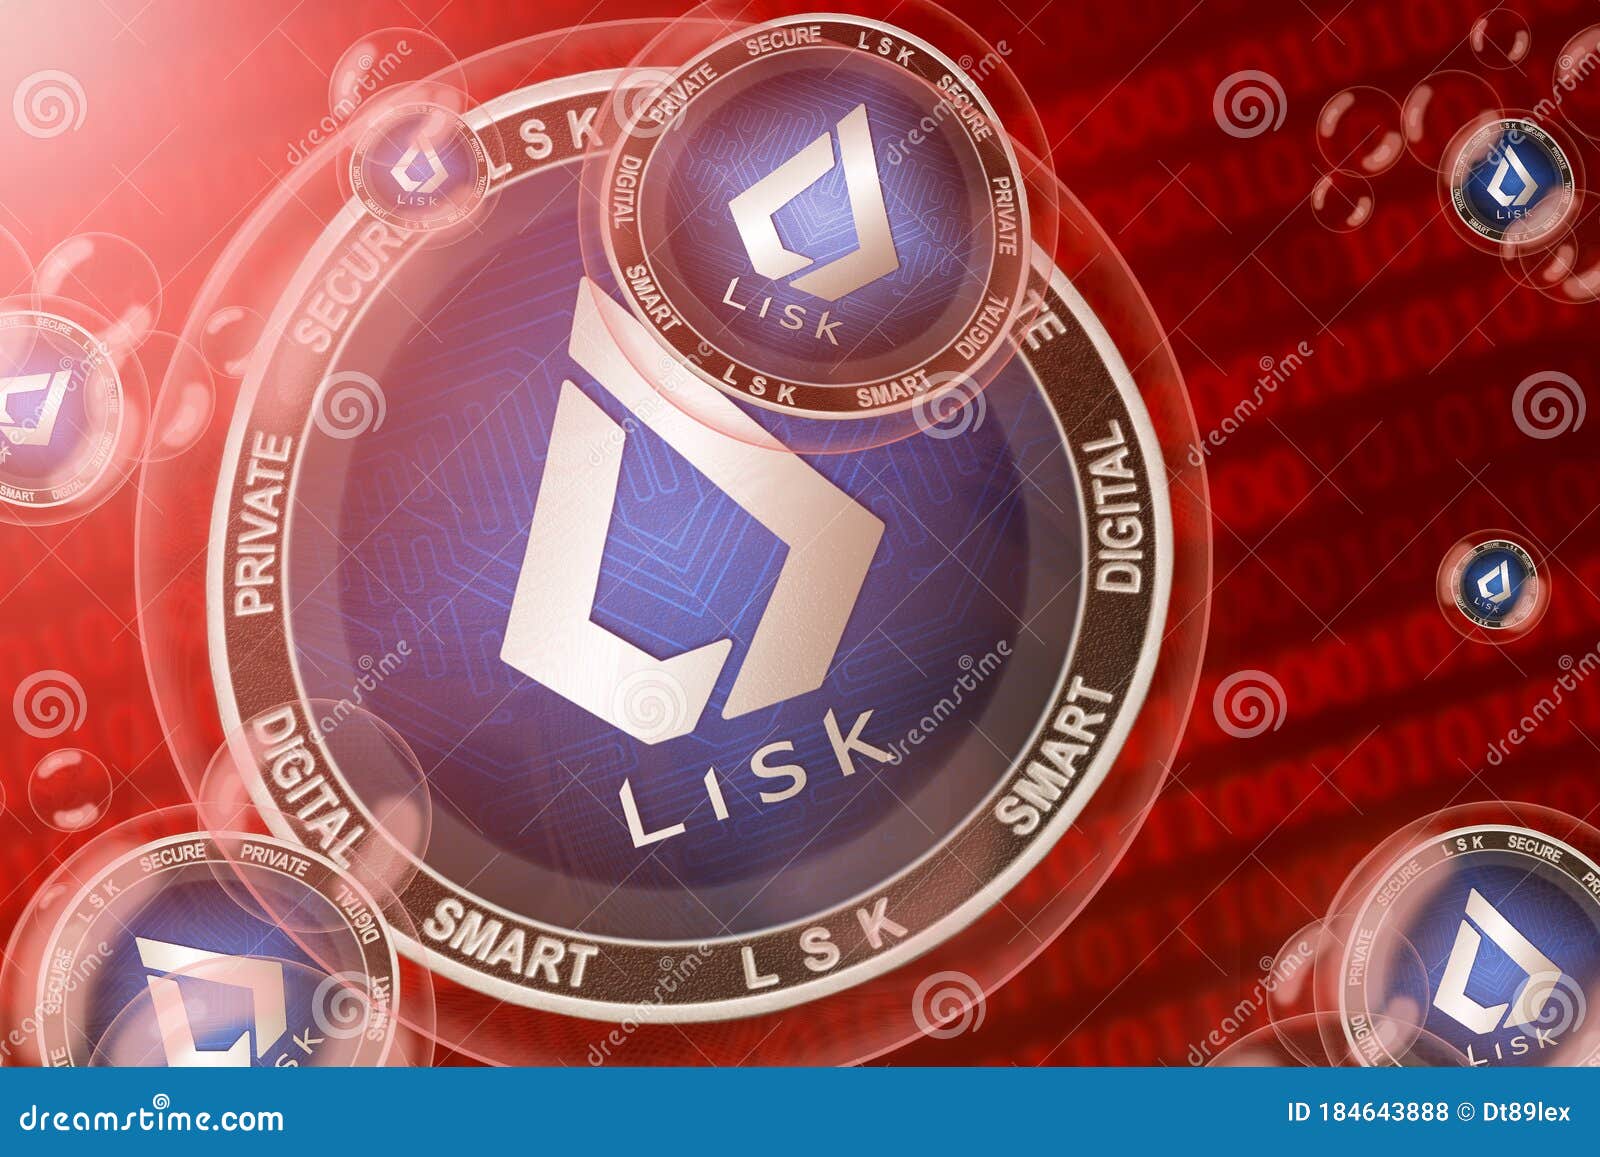 Lisk Crash, Bubble. Lisk LSK Cryptocurrency Coins In A ...